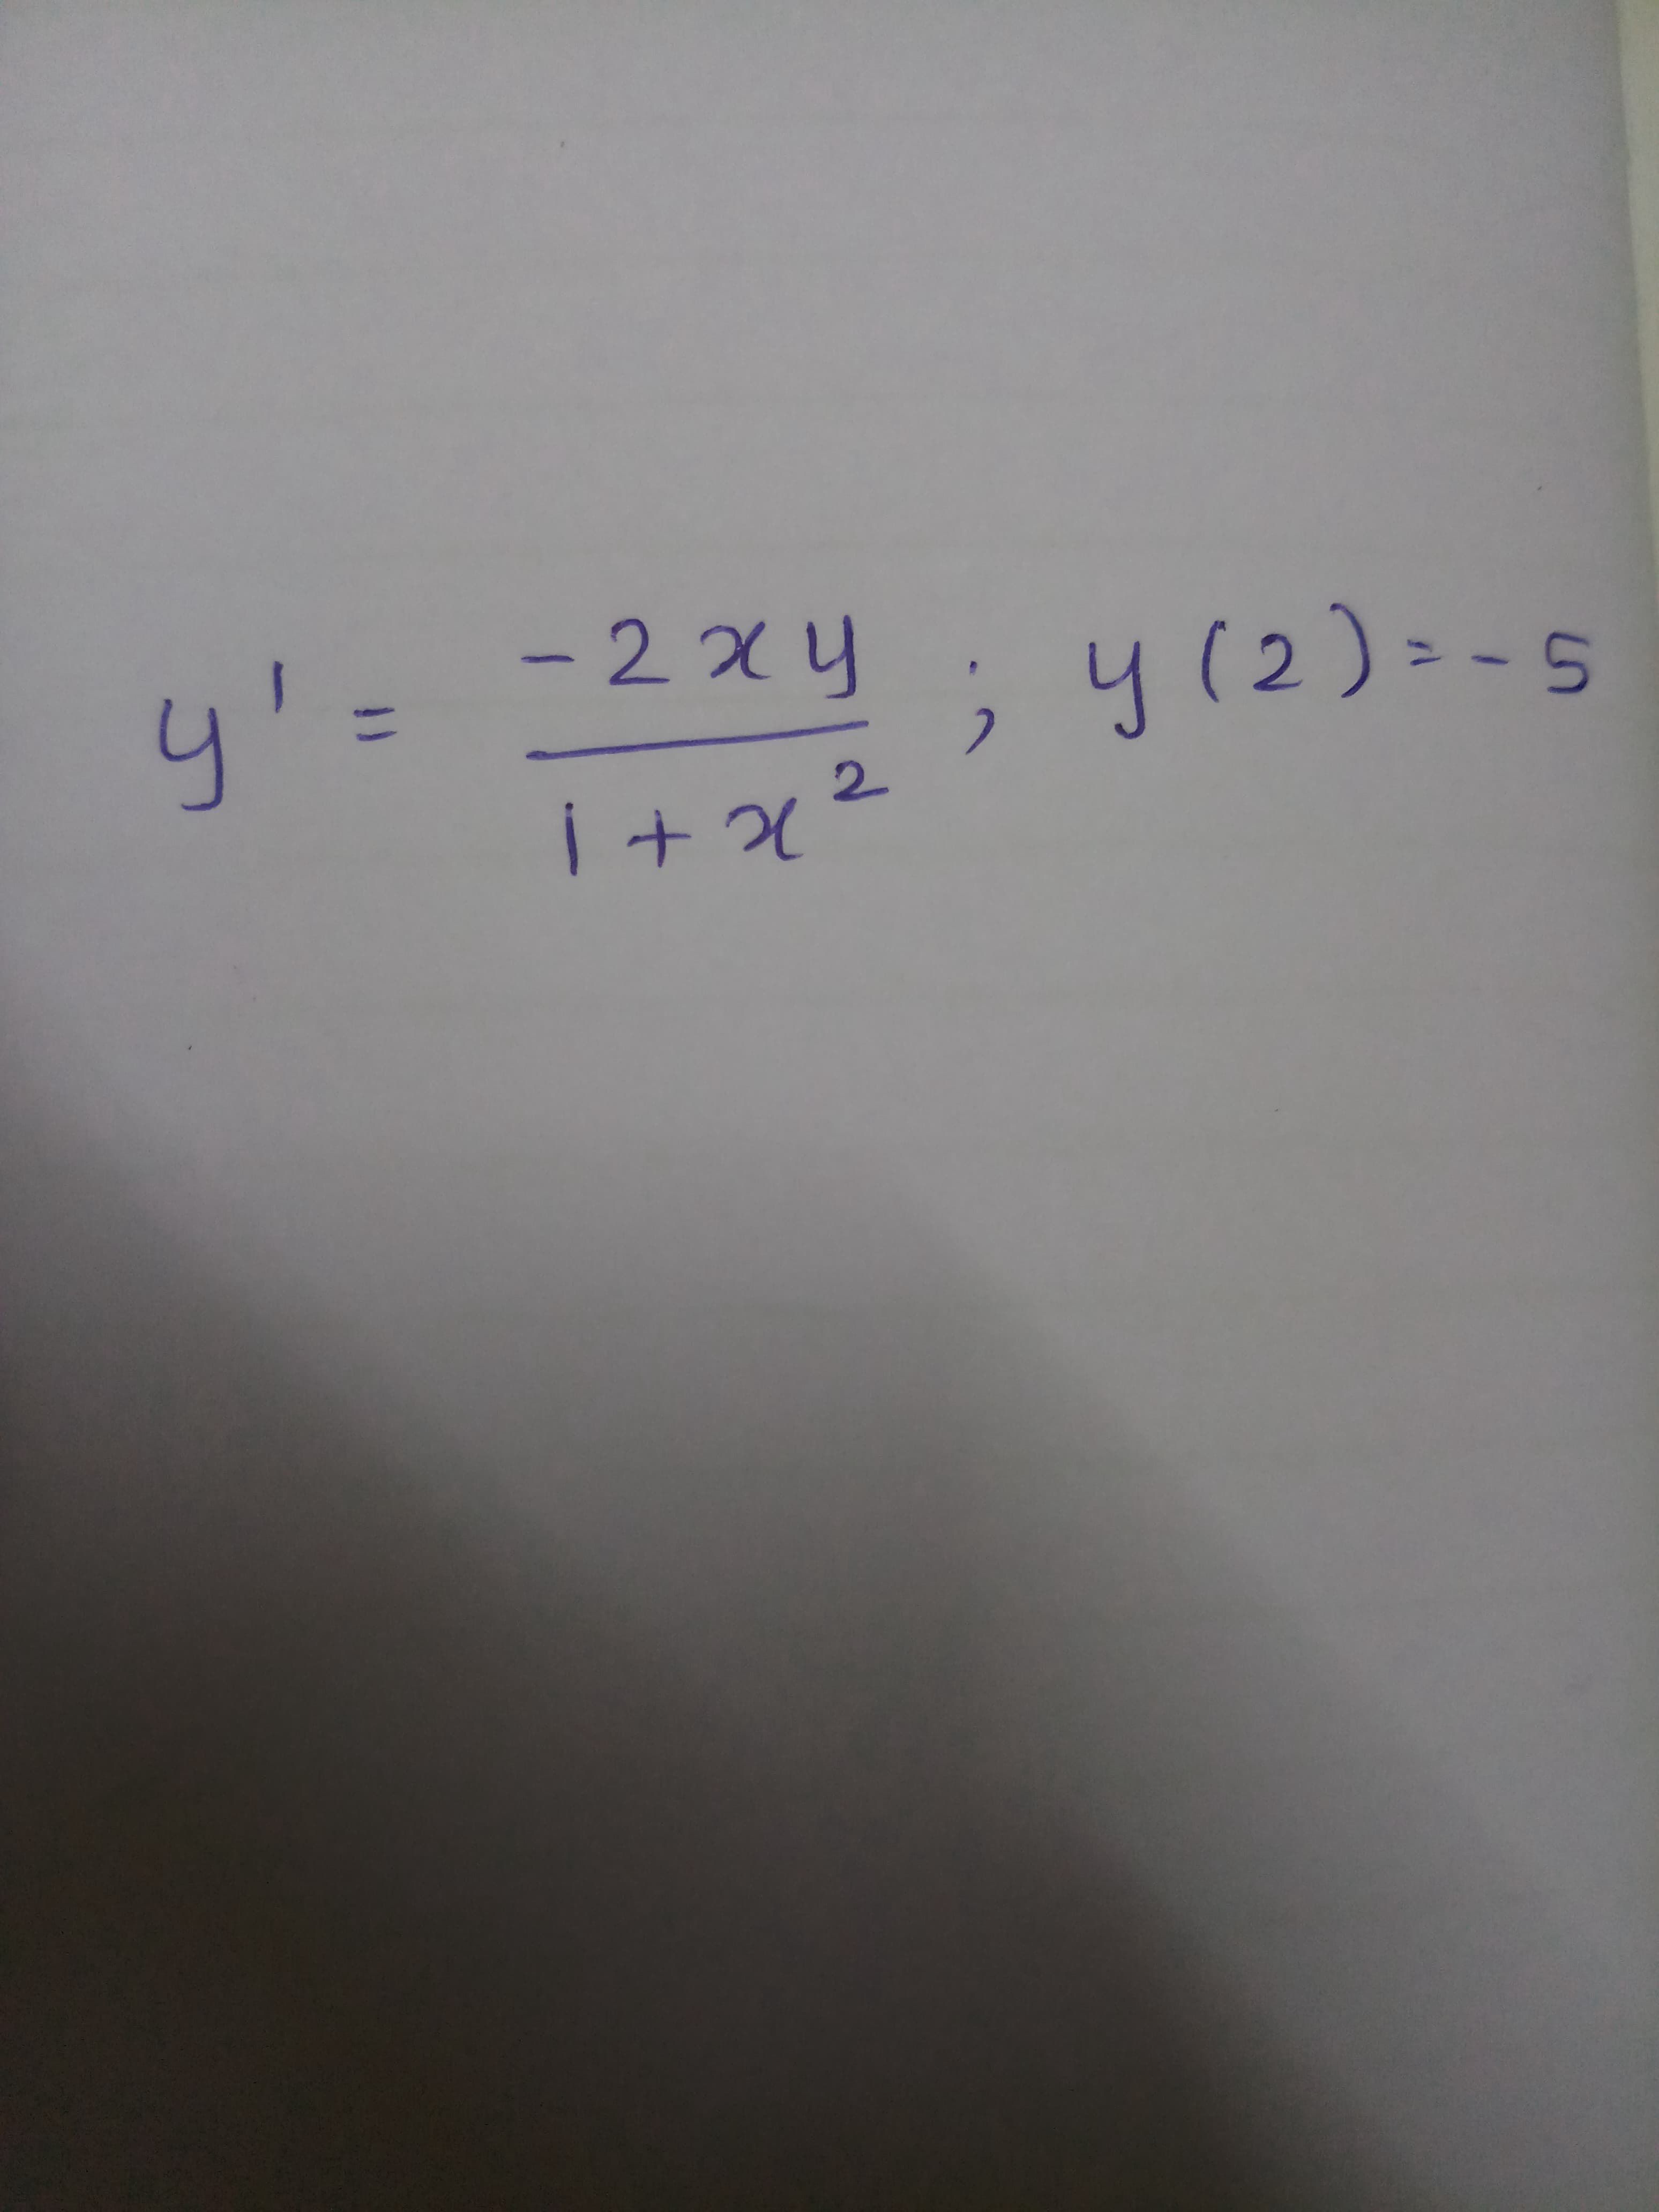 -2x4
y'=
;y(2)=-5
2.
